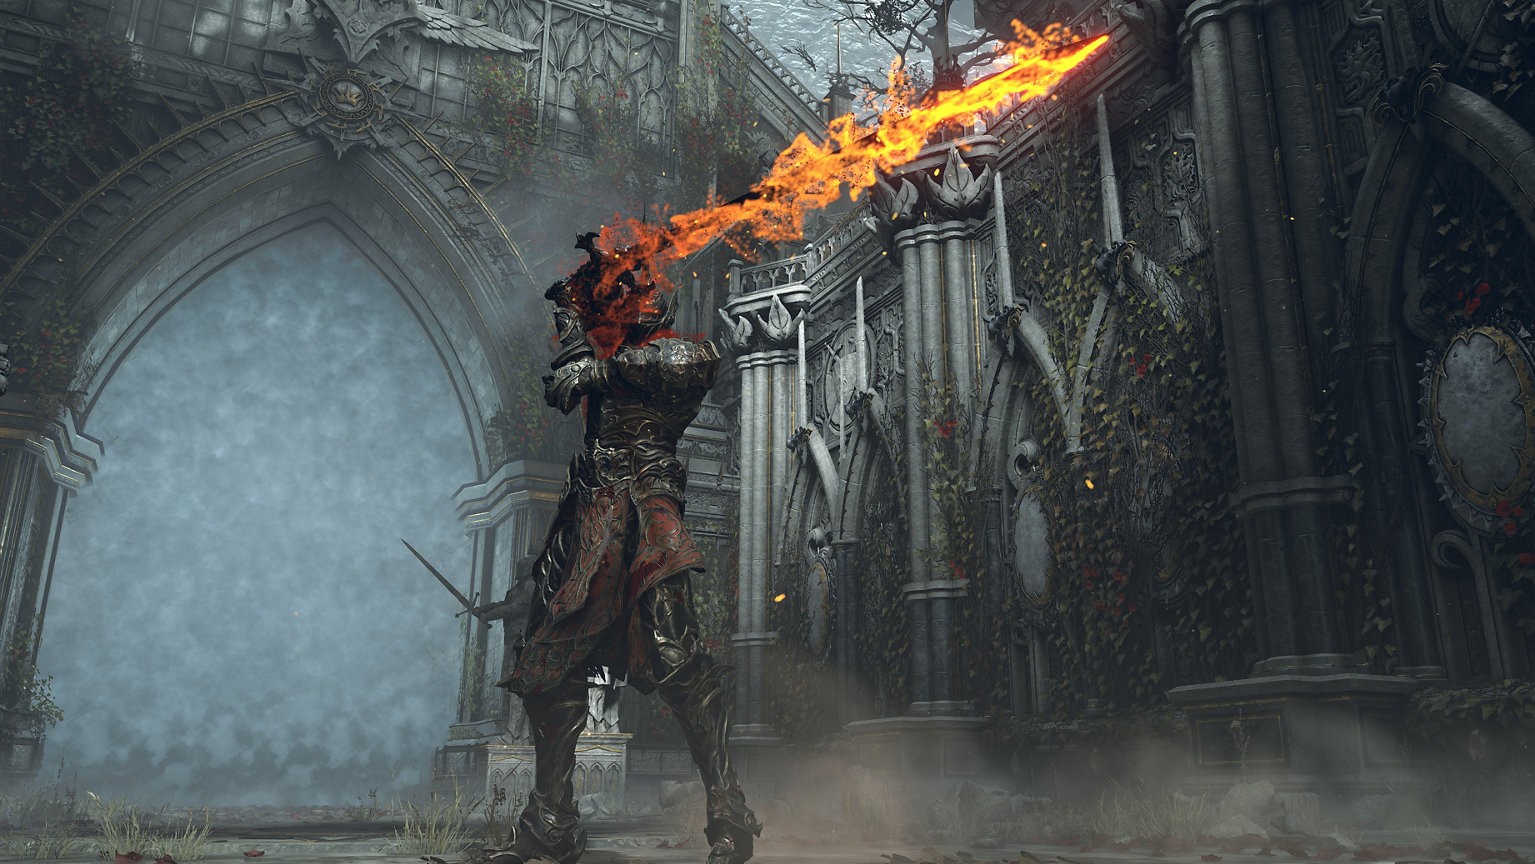 Demon's Souls beginner's guide: Tips for starting the PS5 remake